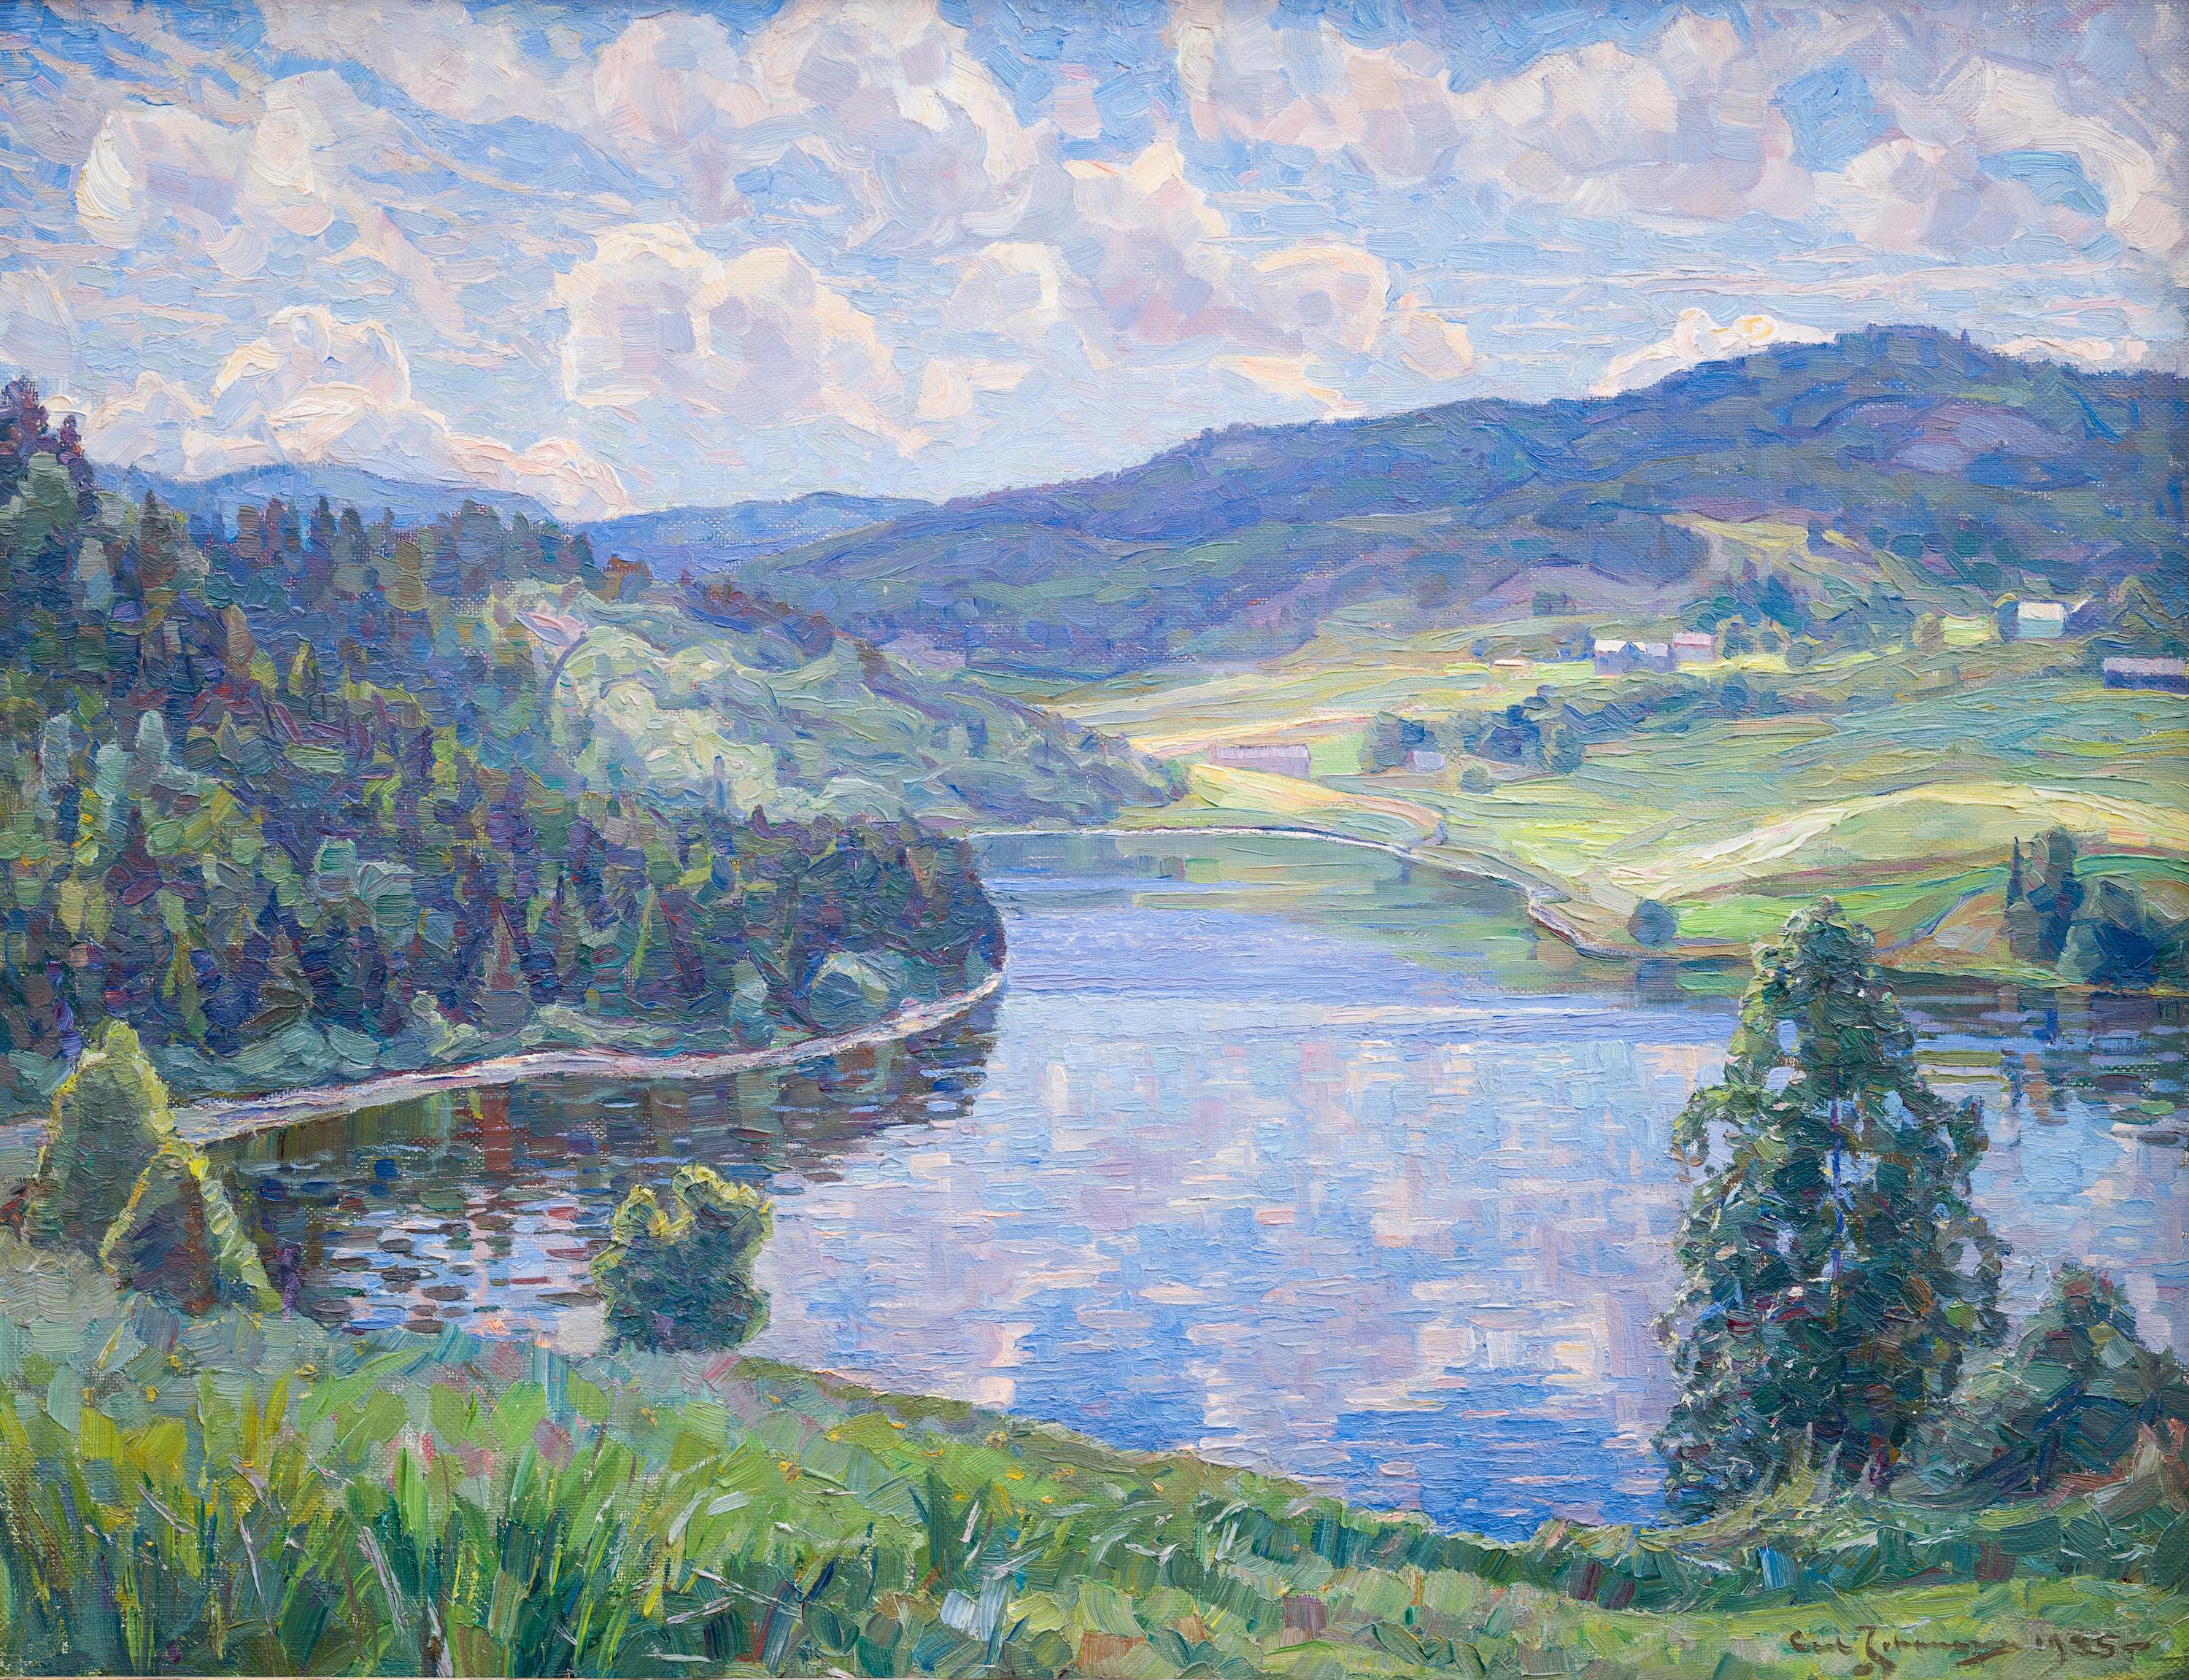 Landschaft aus Nordingrå, 1935 von Ultramarine Johansson